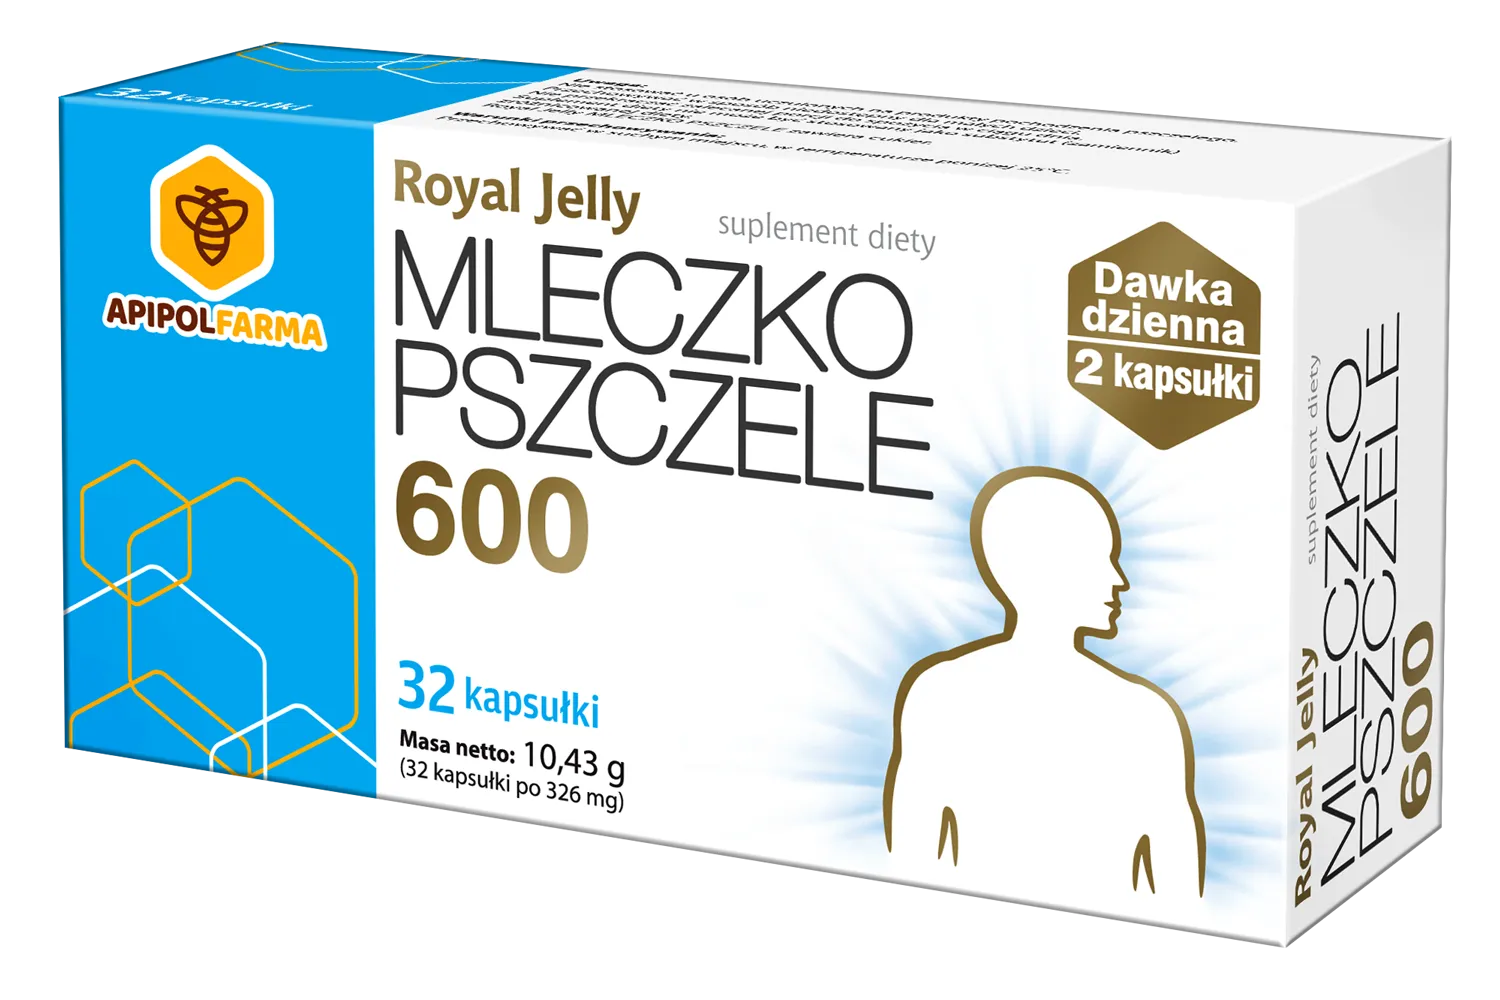 Royal Jelly Mleczko pszczele 600, suplement diety, 32 kapsułki